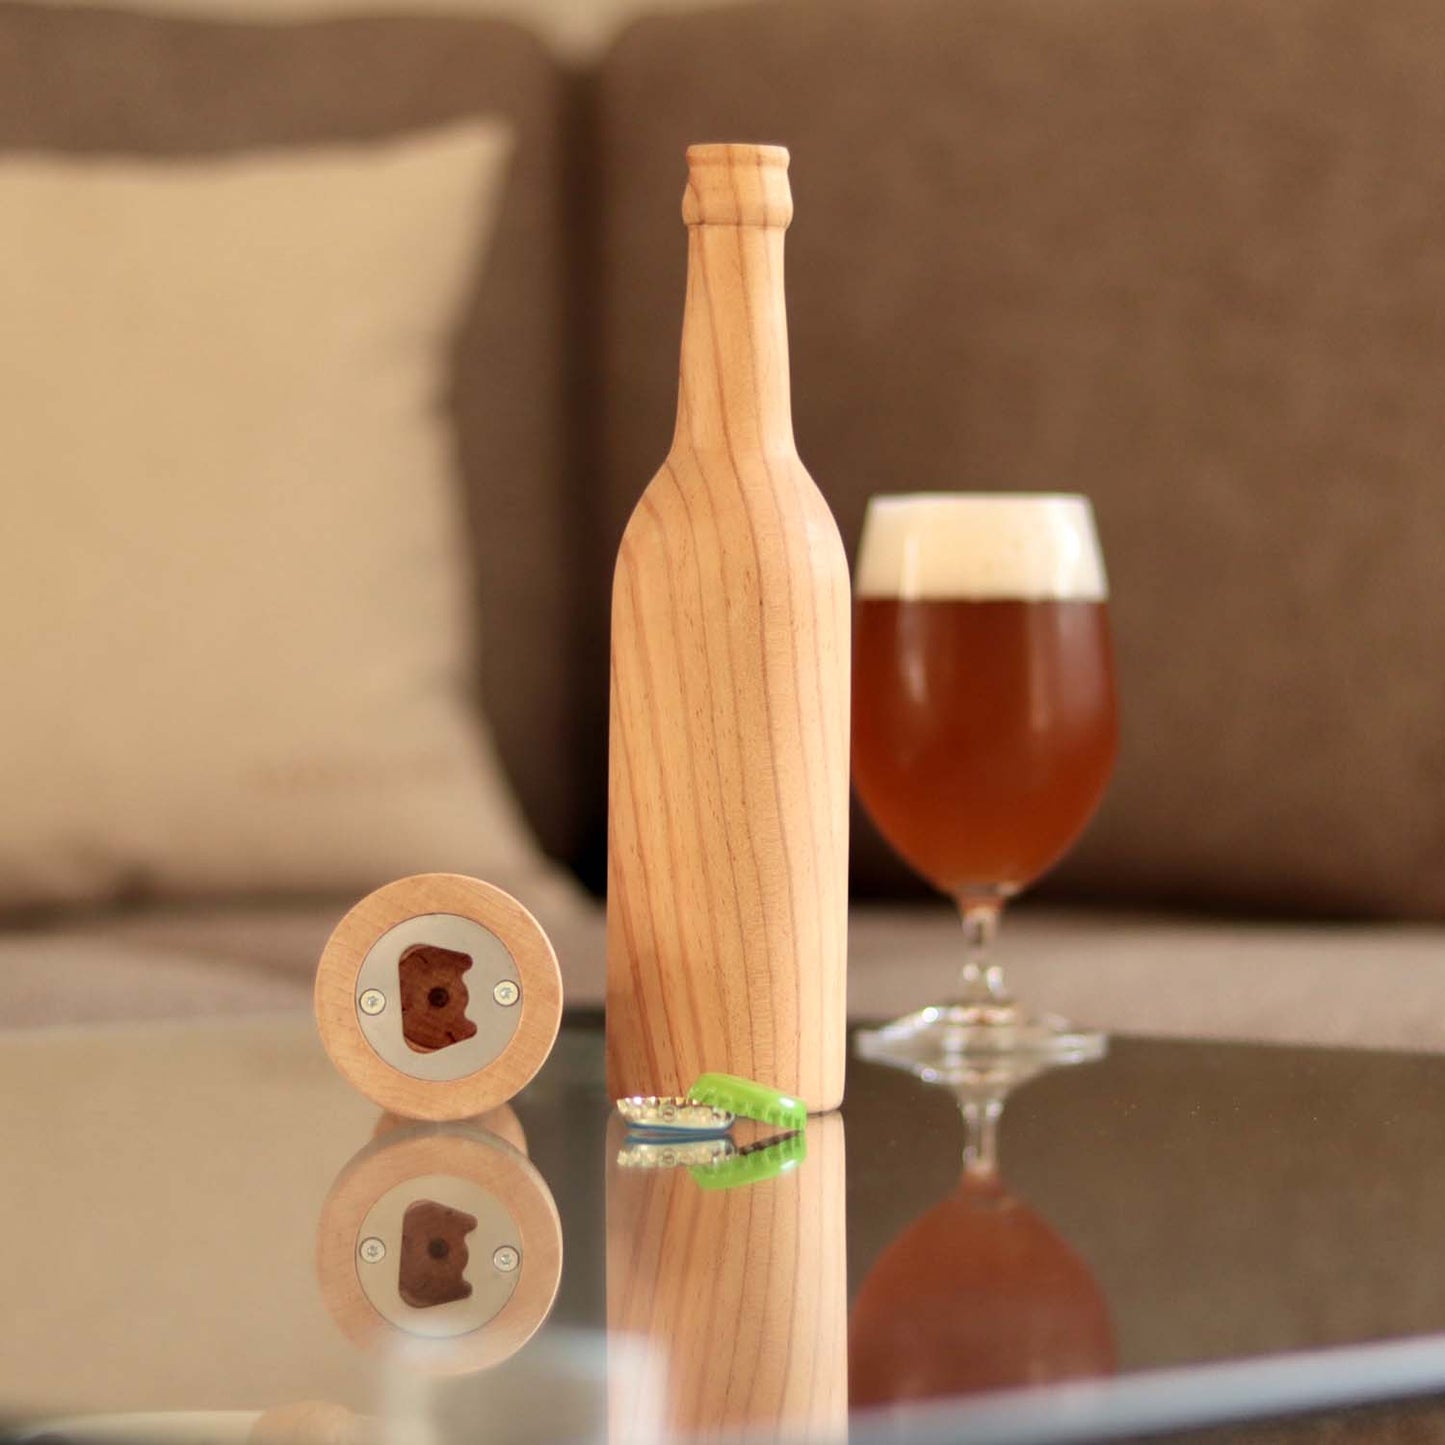 Longneck Flasche aus Holz steht auf einem Tisch. Eine weitere Holzflasche liegt, so dass der im Fuß eingearbeitete Flaschenöffner zu sehen ist.